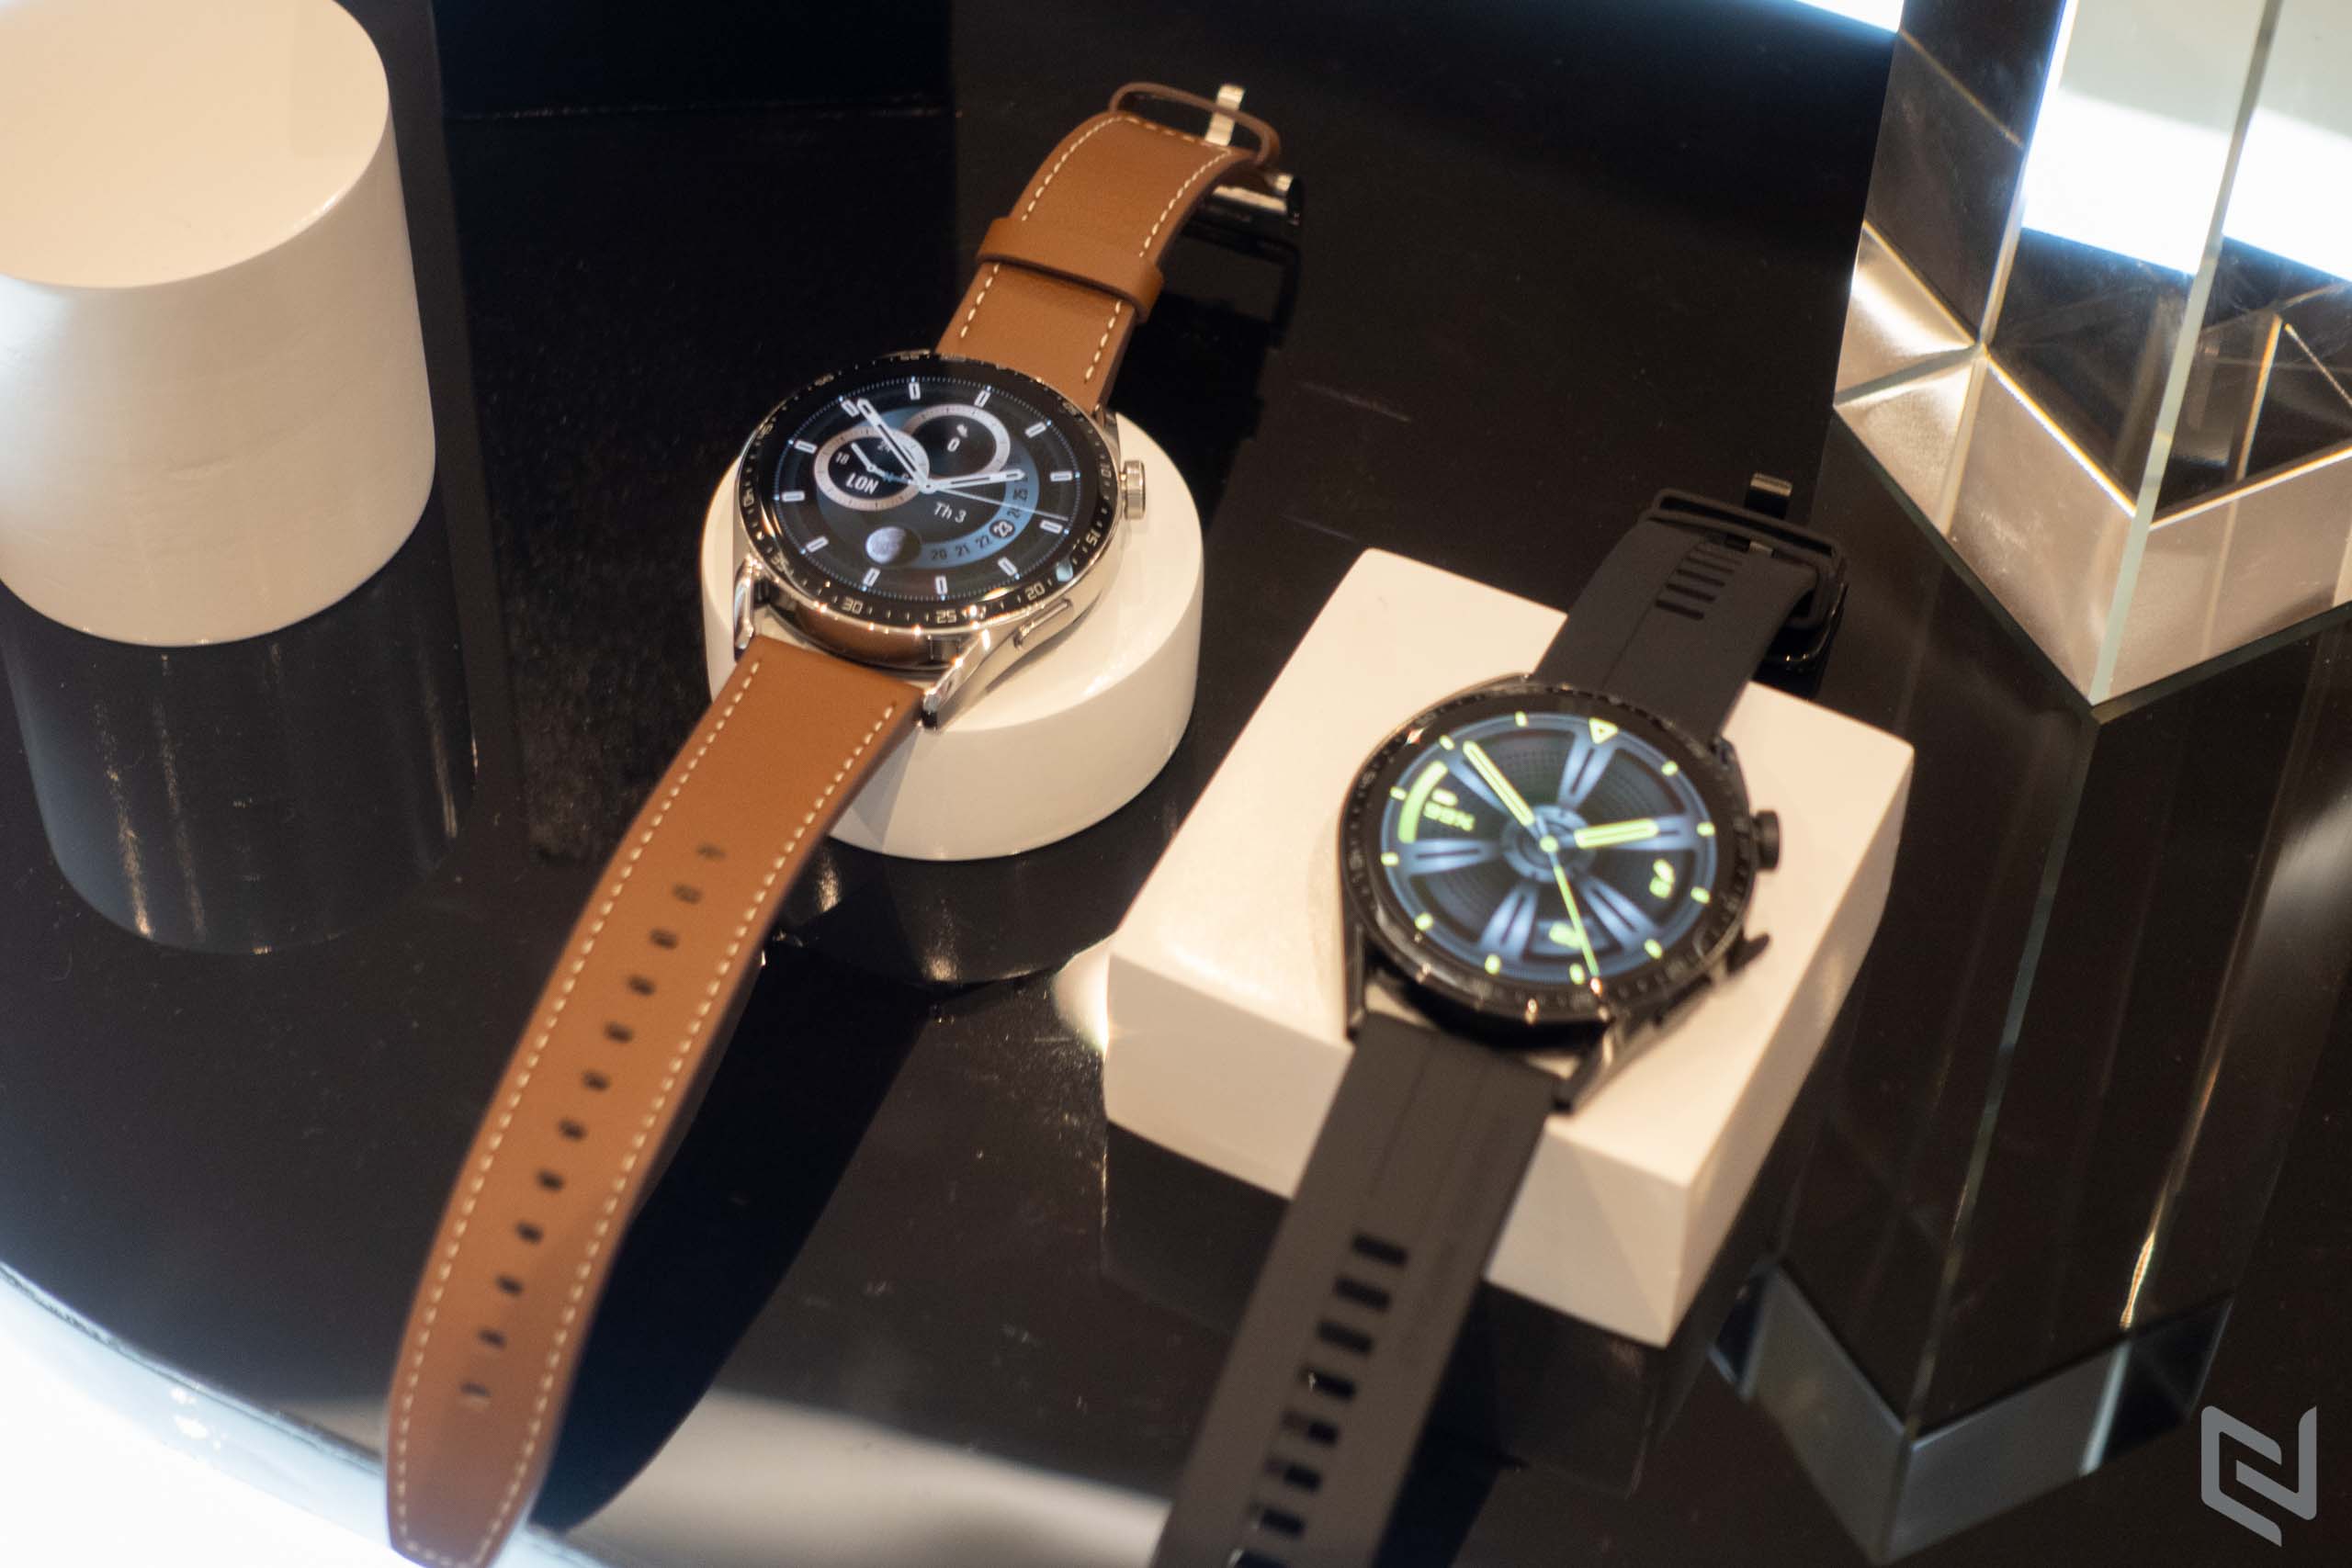 Bộ ba đồng hồ HUAWEI Watch GT 3 & Watch GT Runner được xây dựng trên nền tảng HarmonyOS chính thức ra mắt tại Việt Nam